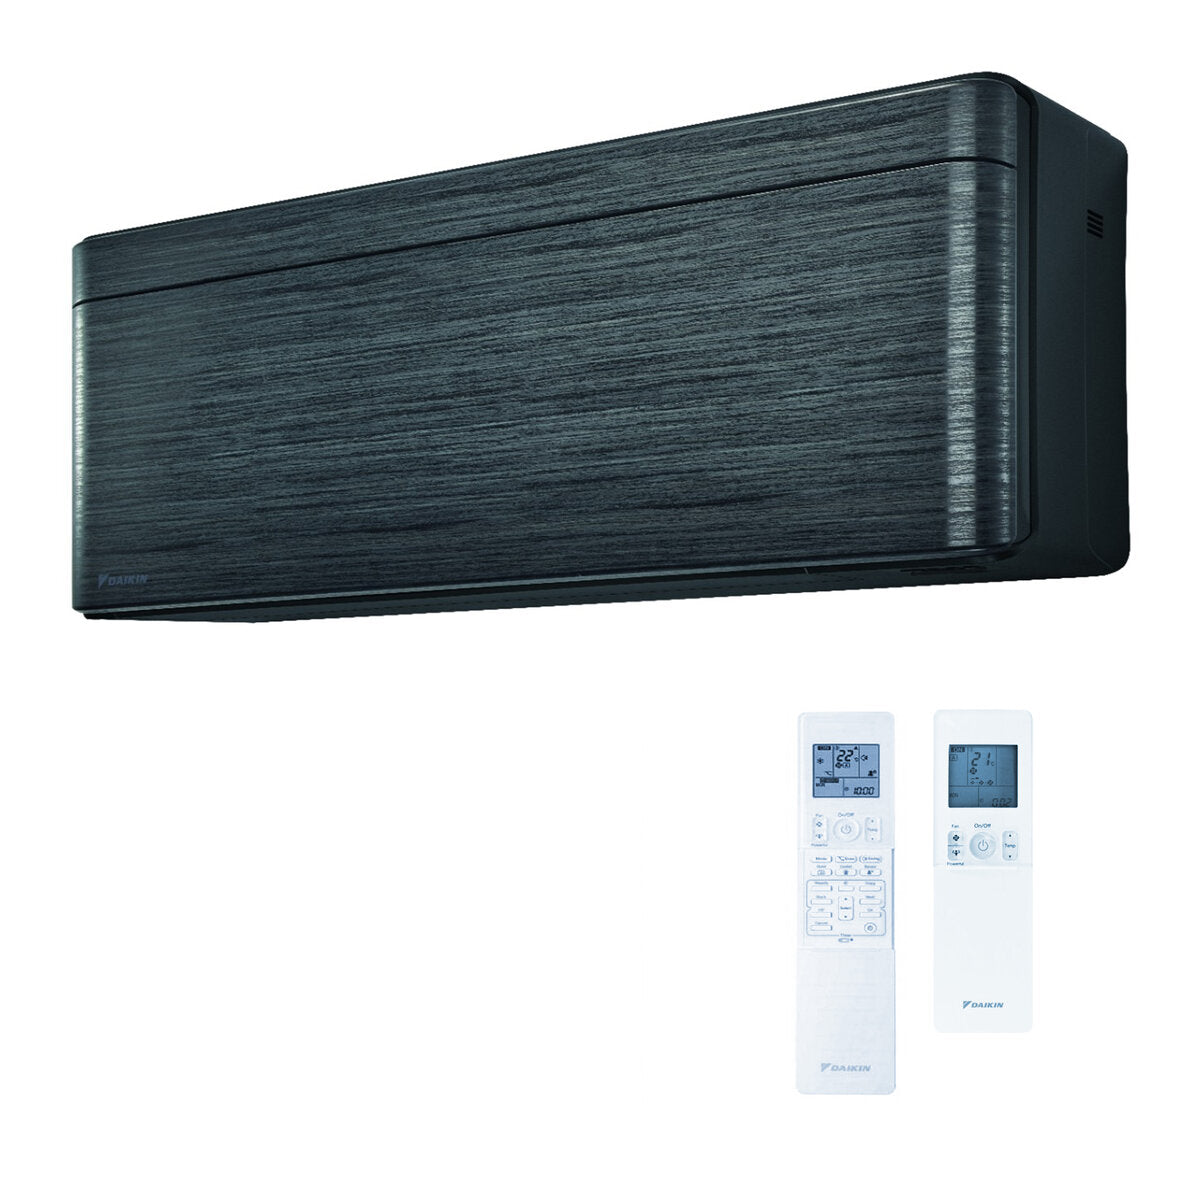 Daikin Stylish dual split air conditioner 7000 + 7000 BTU inverter A +++ wifi outdoor unit 4.0 kW